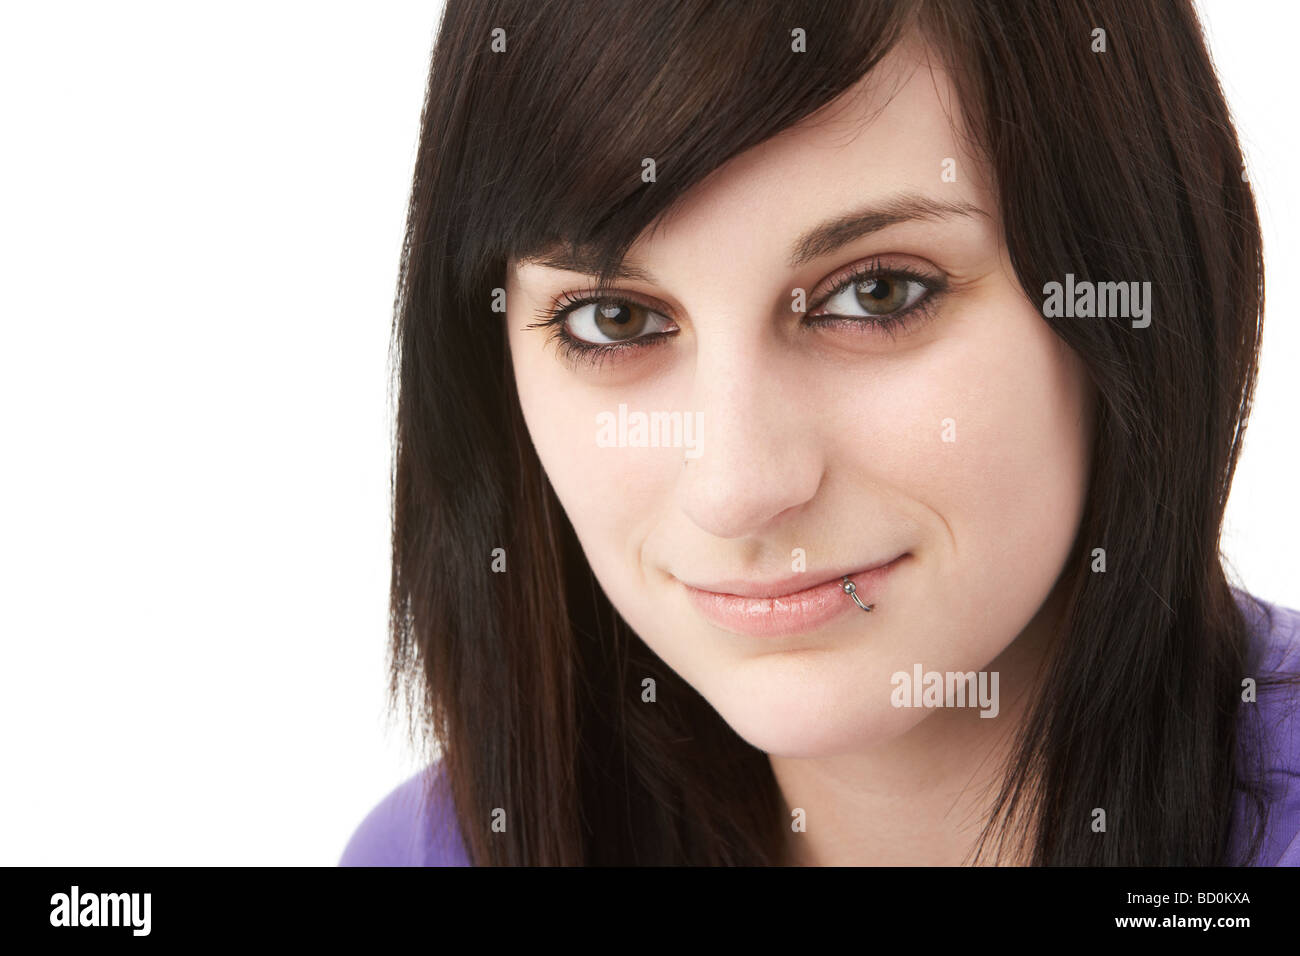 Studio Portrait Of Smiling Teenage Girl Stock Photo - Alamy